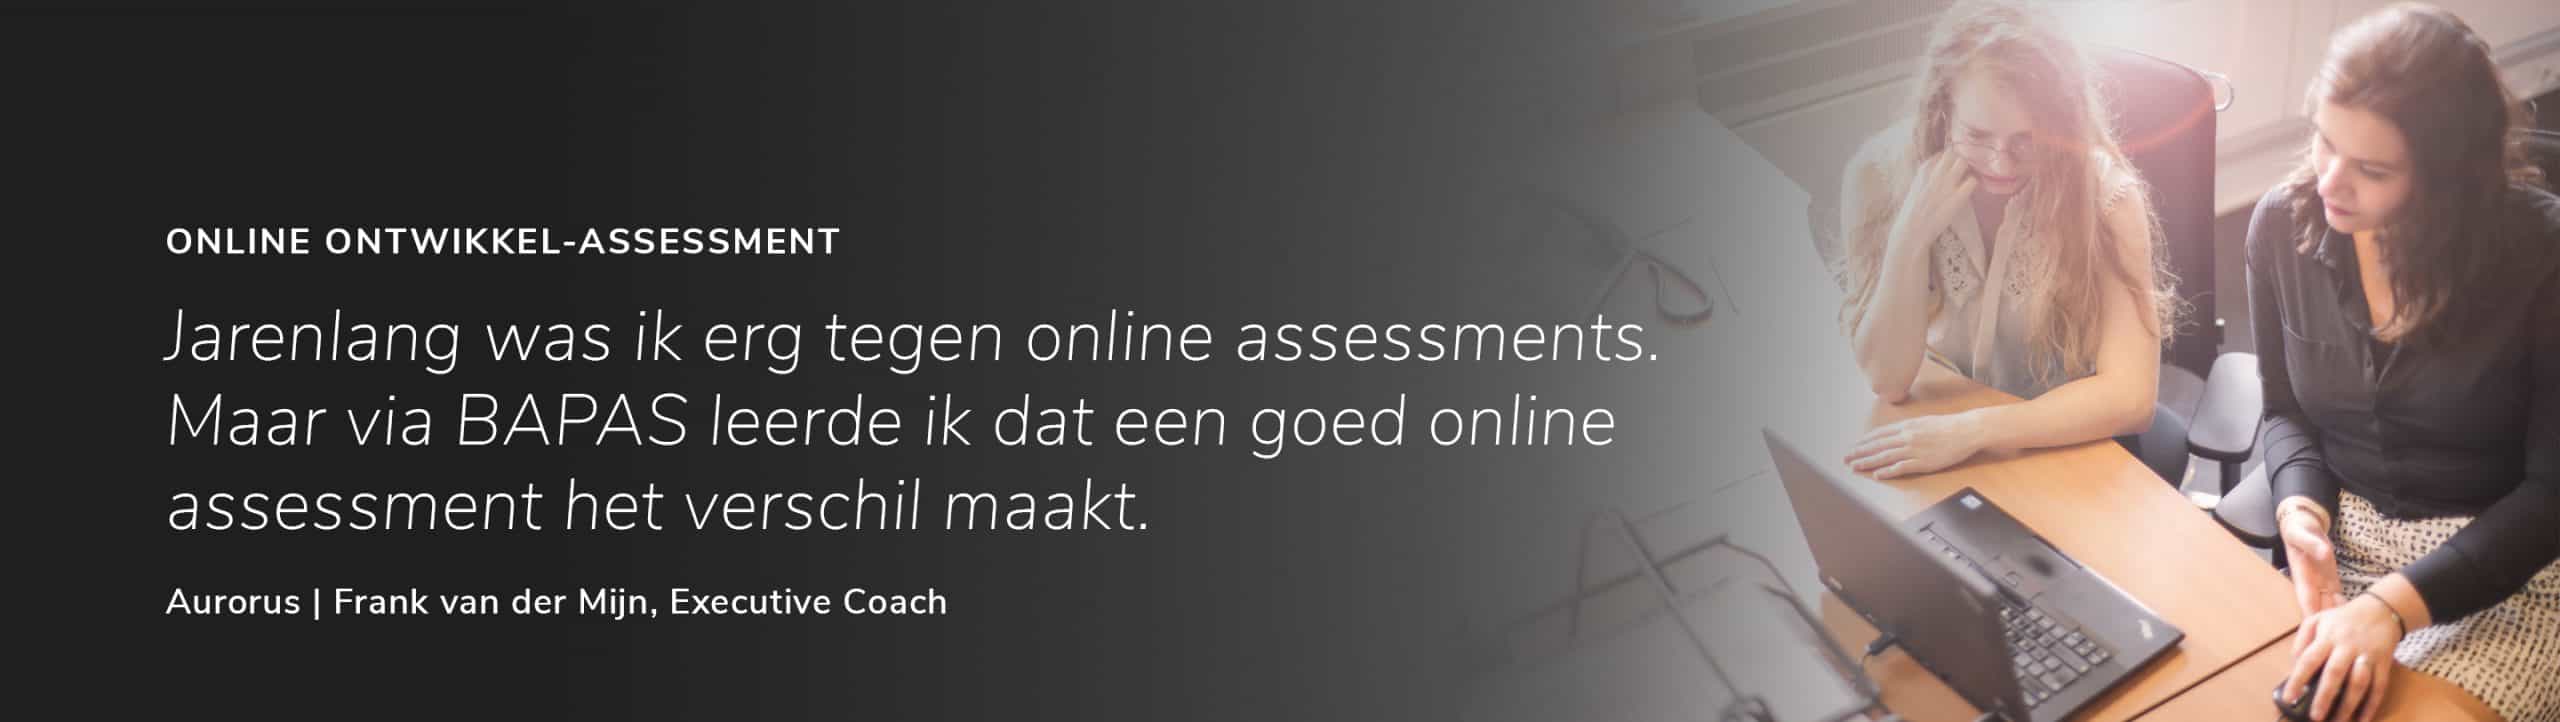 Bapas Online Ontwikkel Assessment